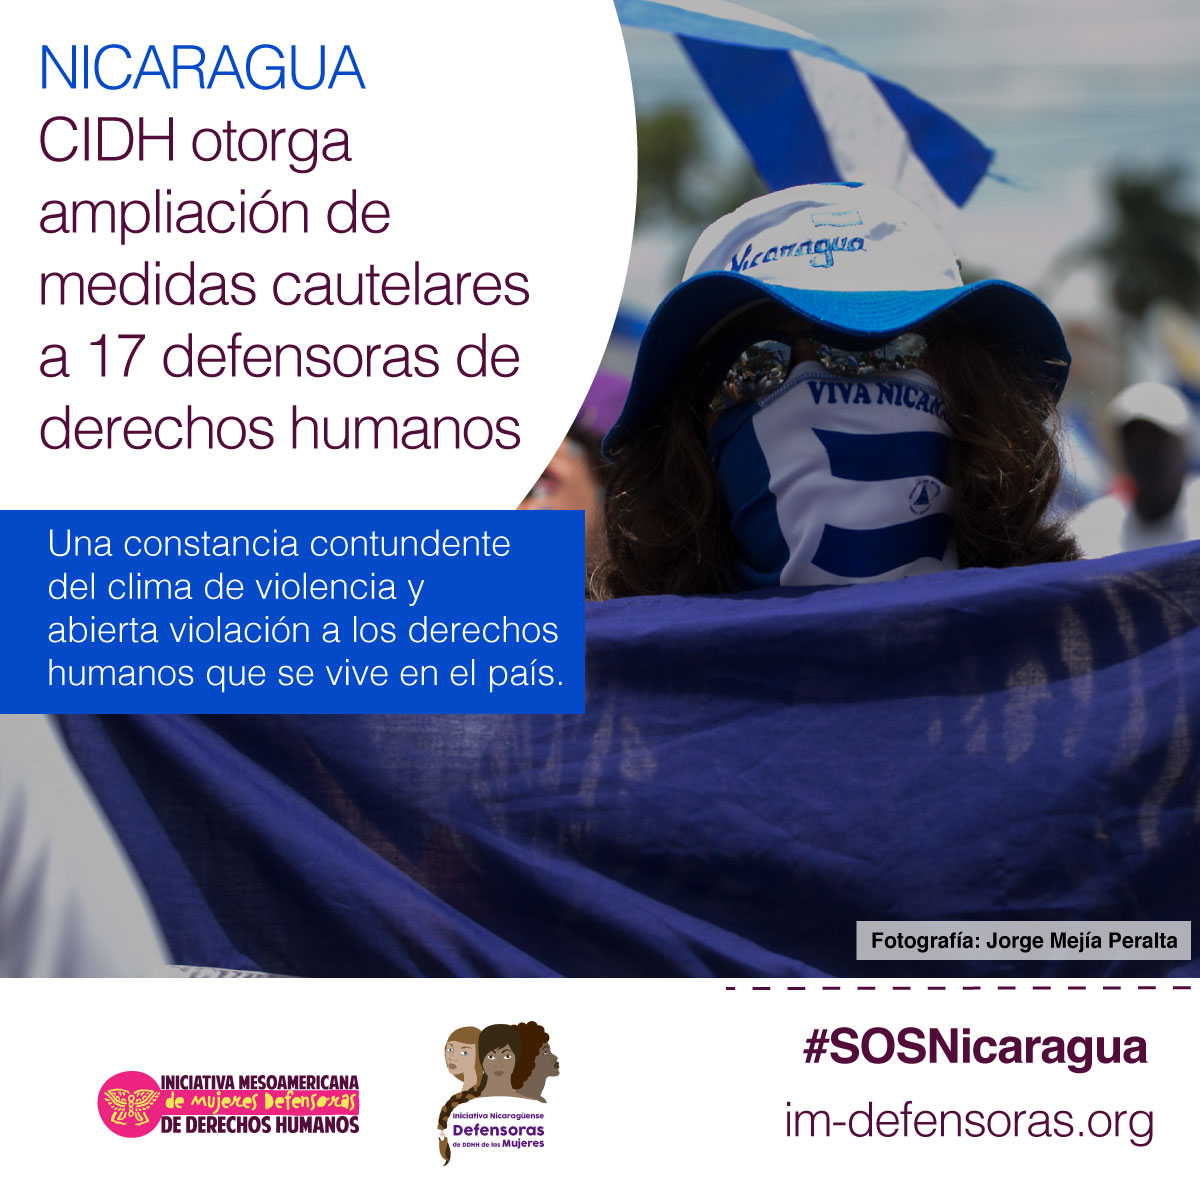 El pasado 24 de diciembre la Comisión Interamericana de Derechos Humanos (CIDH) resolvió ampliar las medidas cautelares de diecisiete defensoras de derechos humanos de Nicaragua, reconociendo el riesgo en el que se encuentran e instando al Estado nicaragüense a proteger la vida e integridad de ellas y de sus familias.